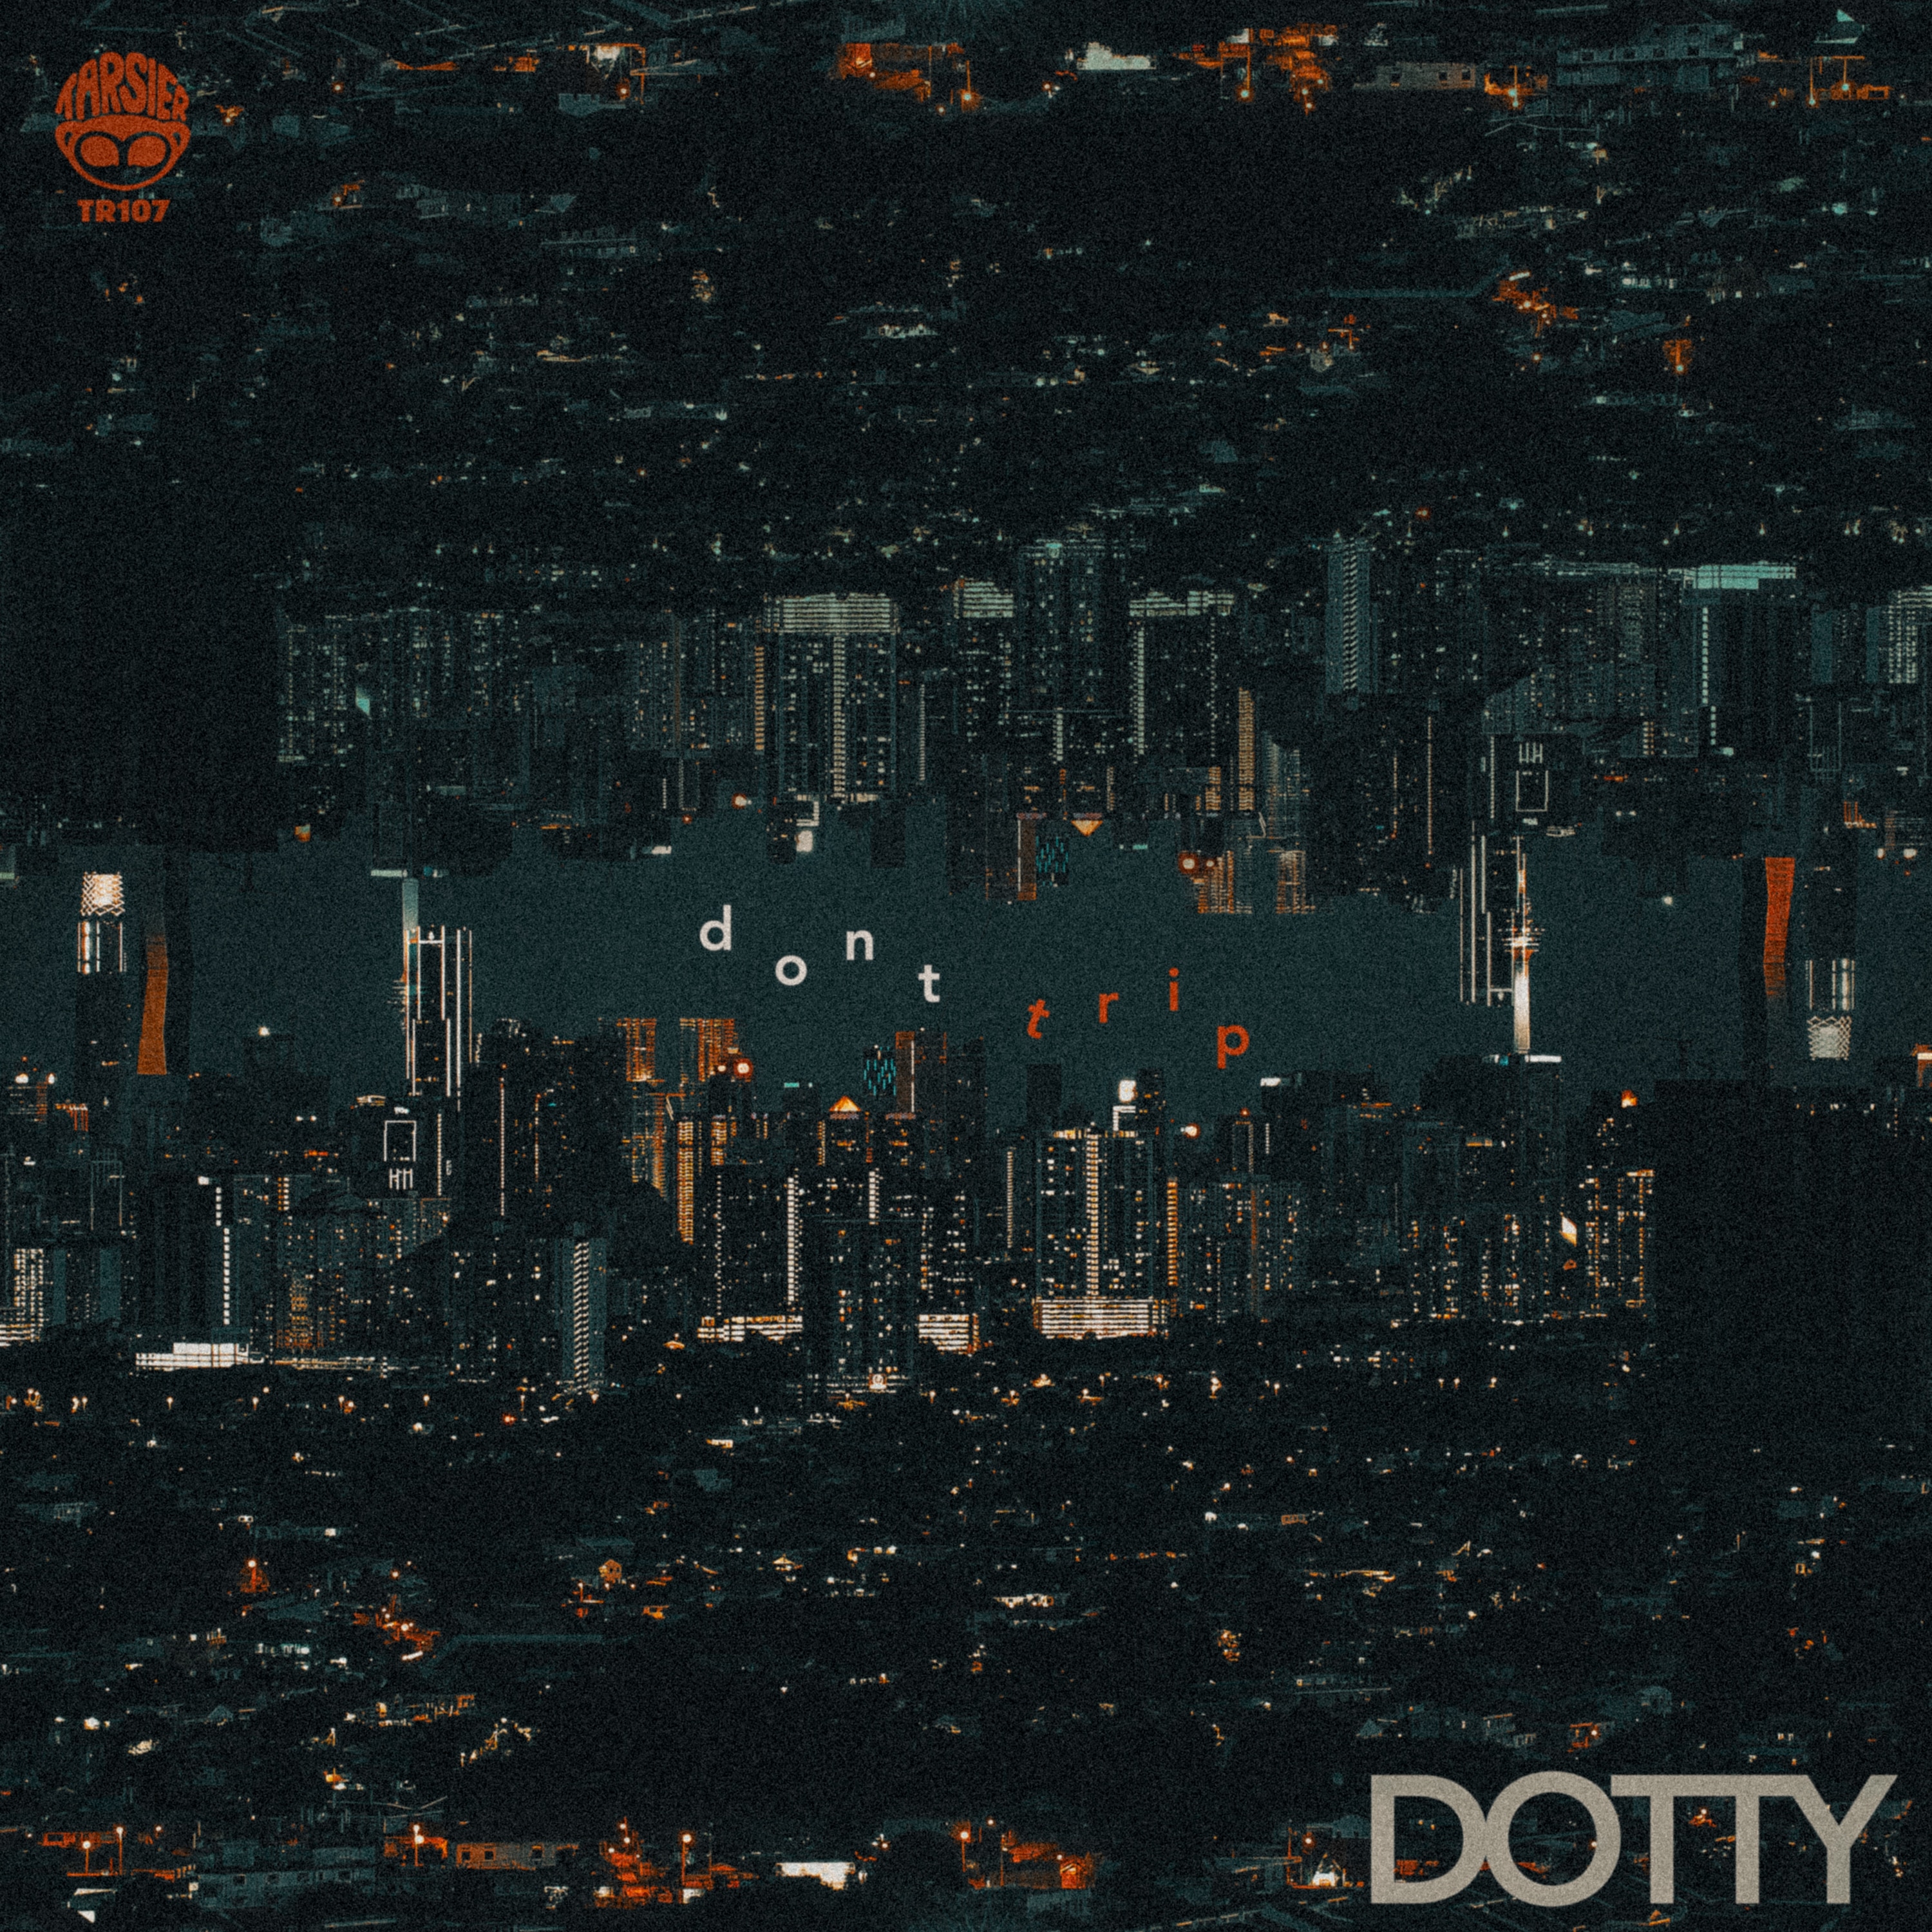 Dotty_dont trip